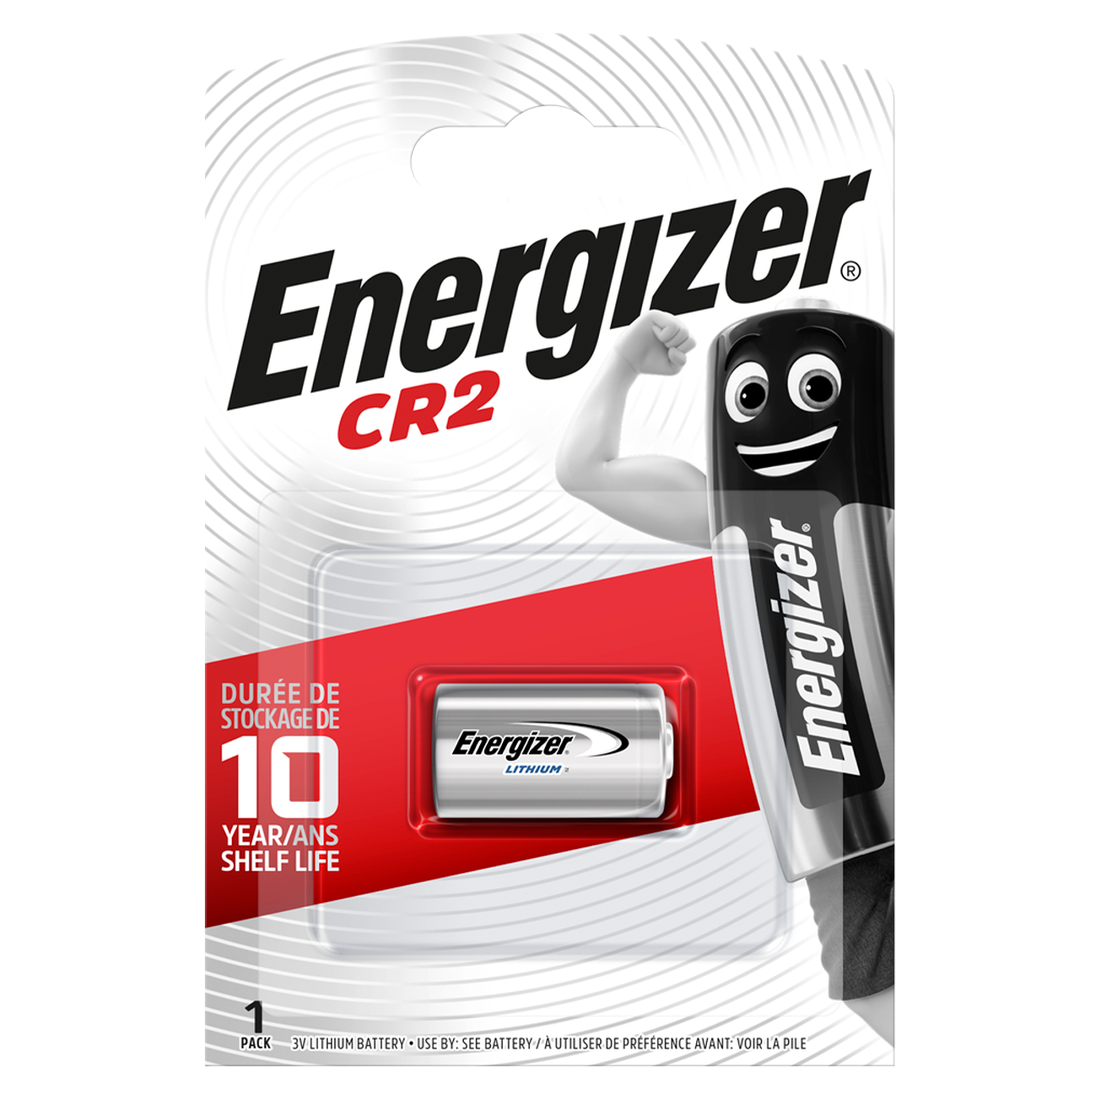 Energizer CR2 3v Lithium Battery (EN-CR2) — adk-security